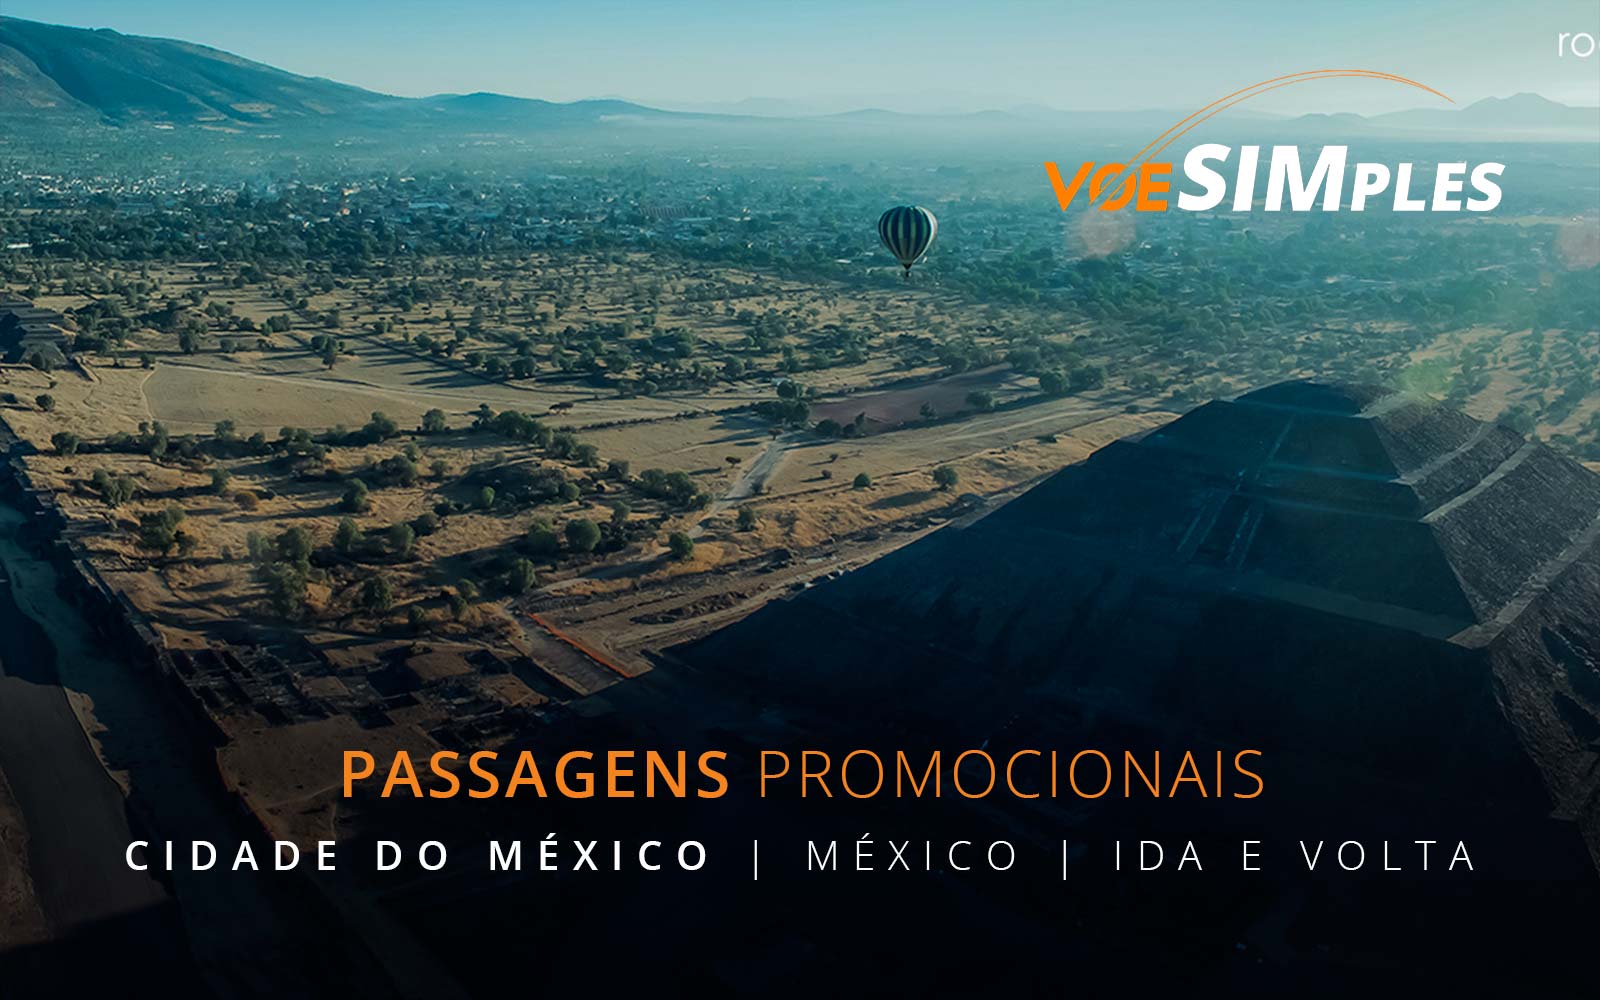 Passagens aéreas promocionais para a Cidade do Mexico